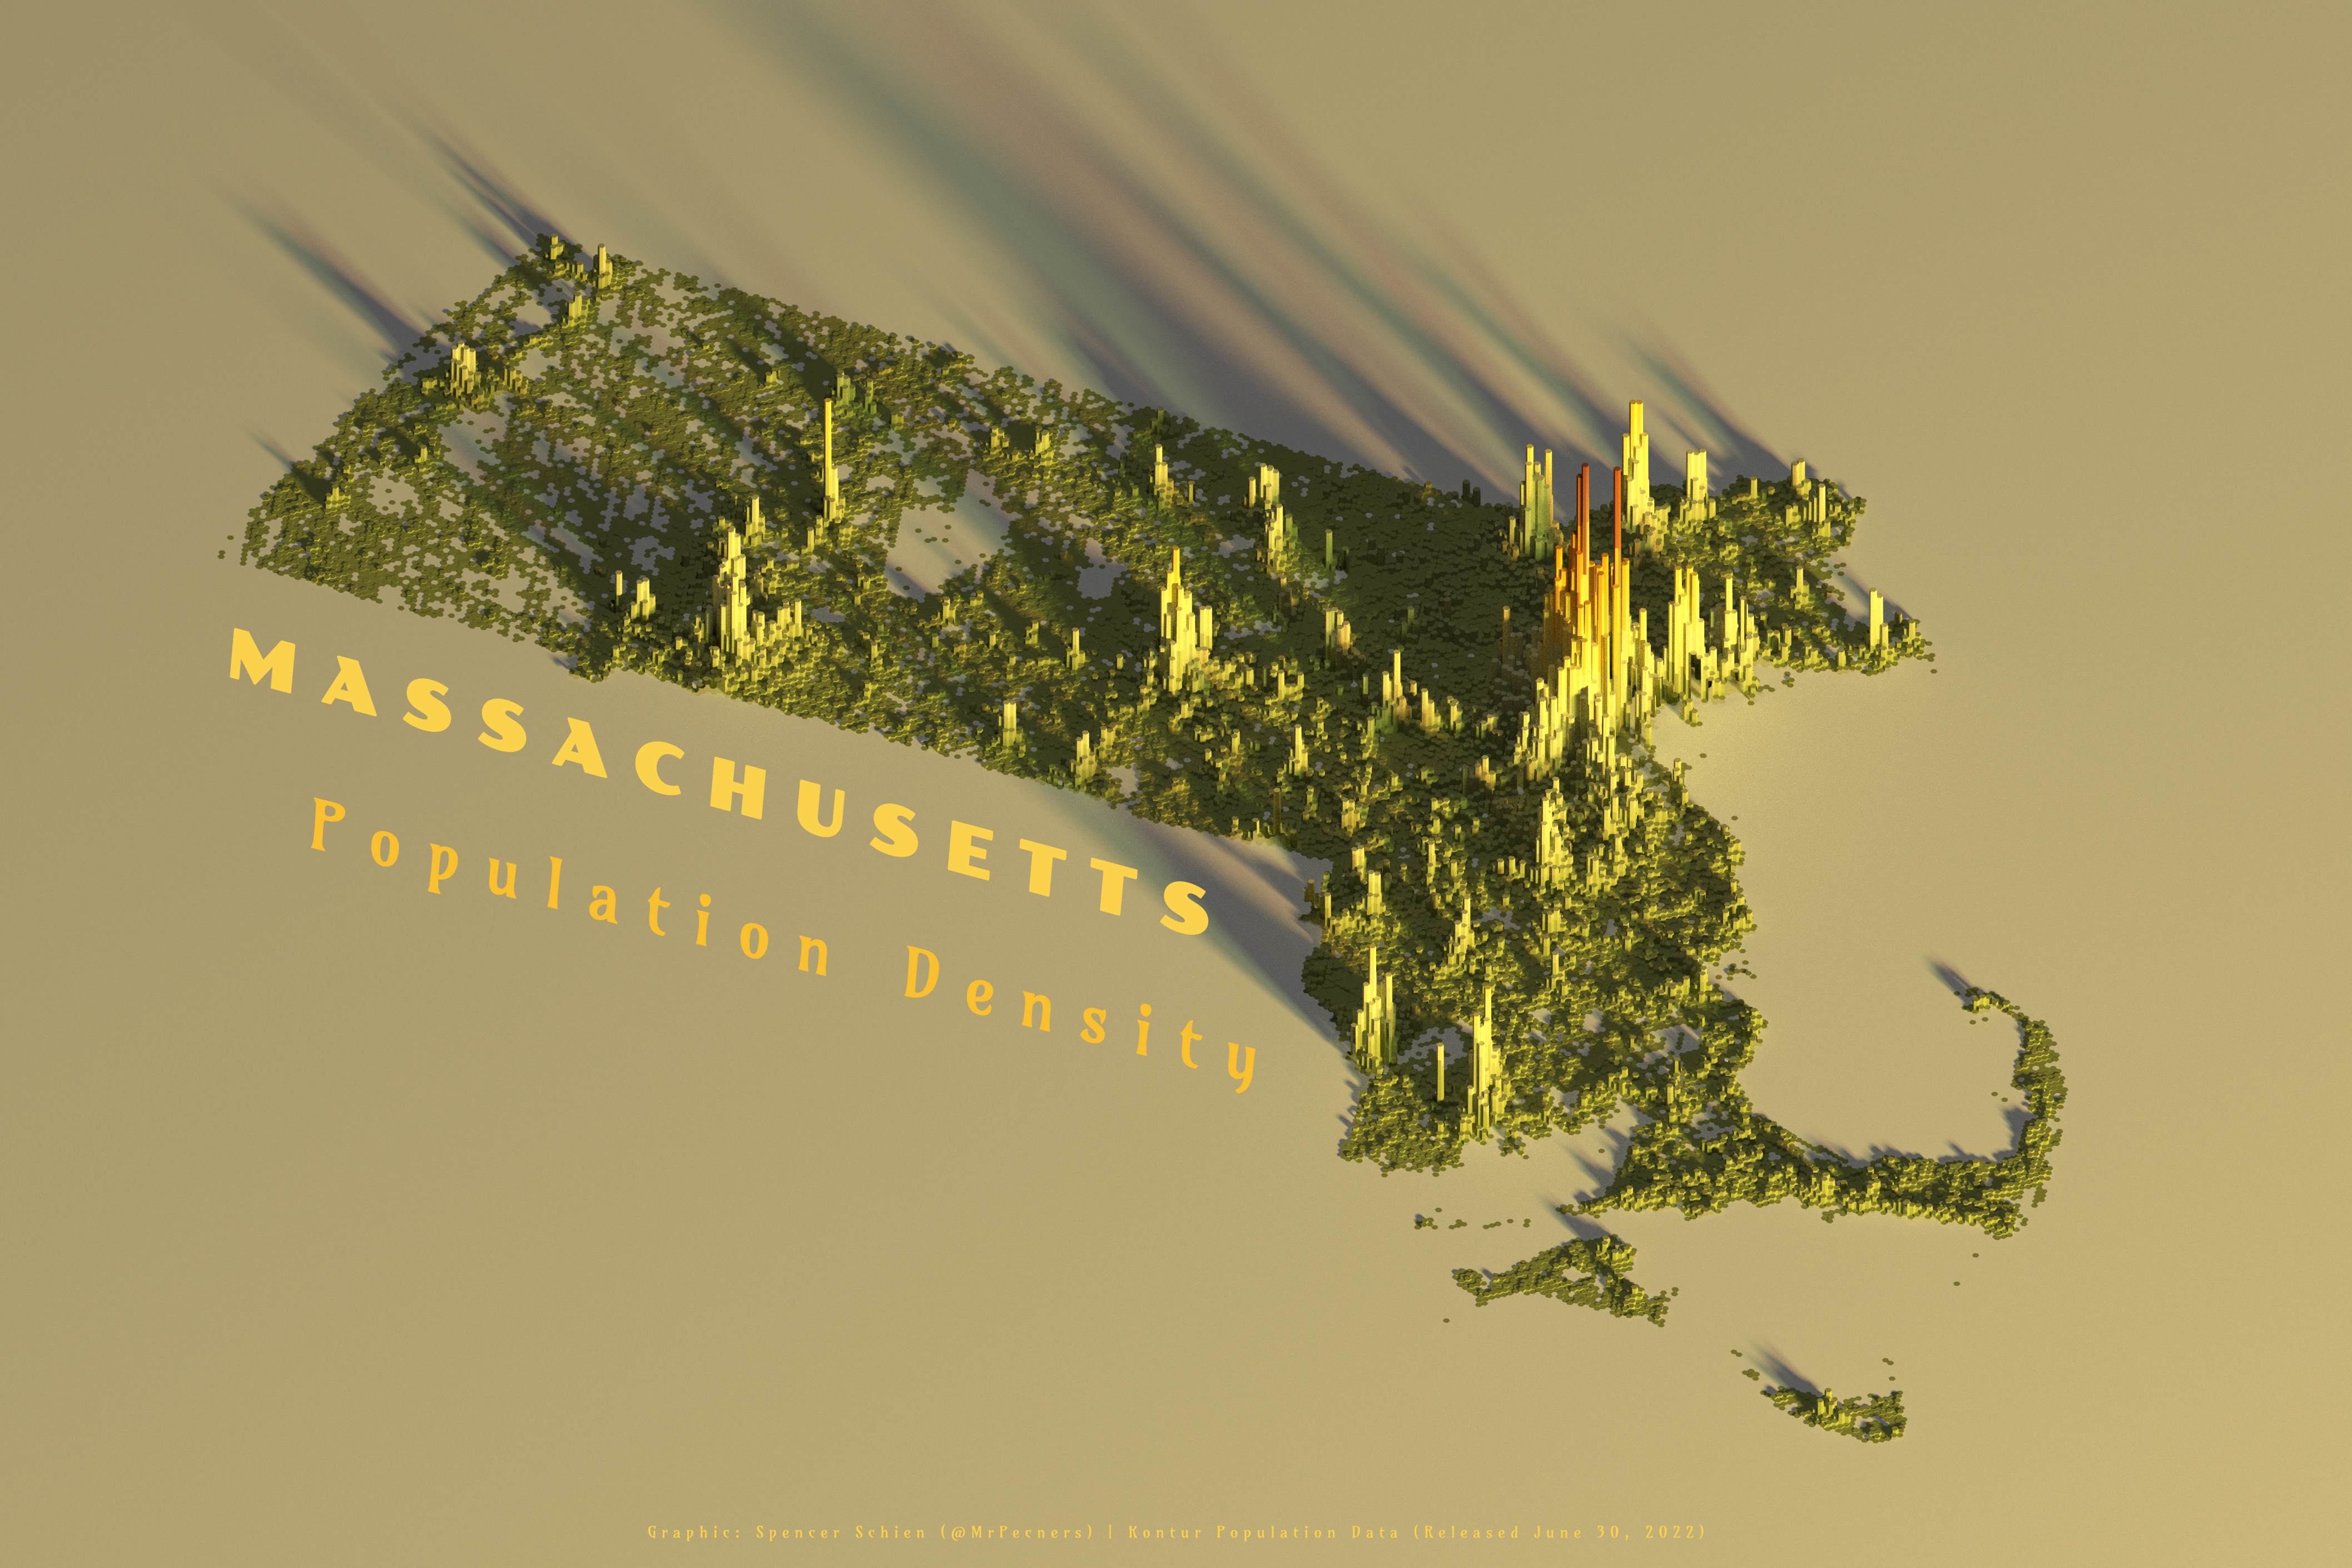 Massachusetts Population Density